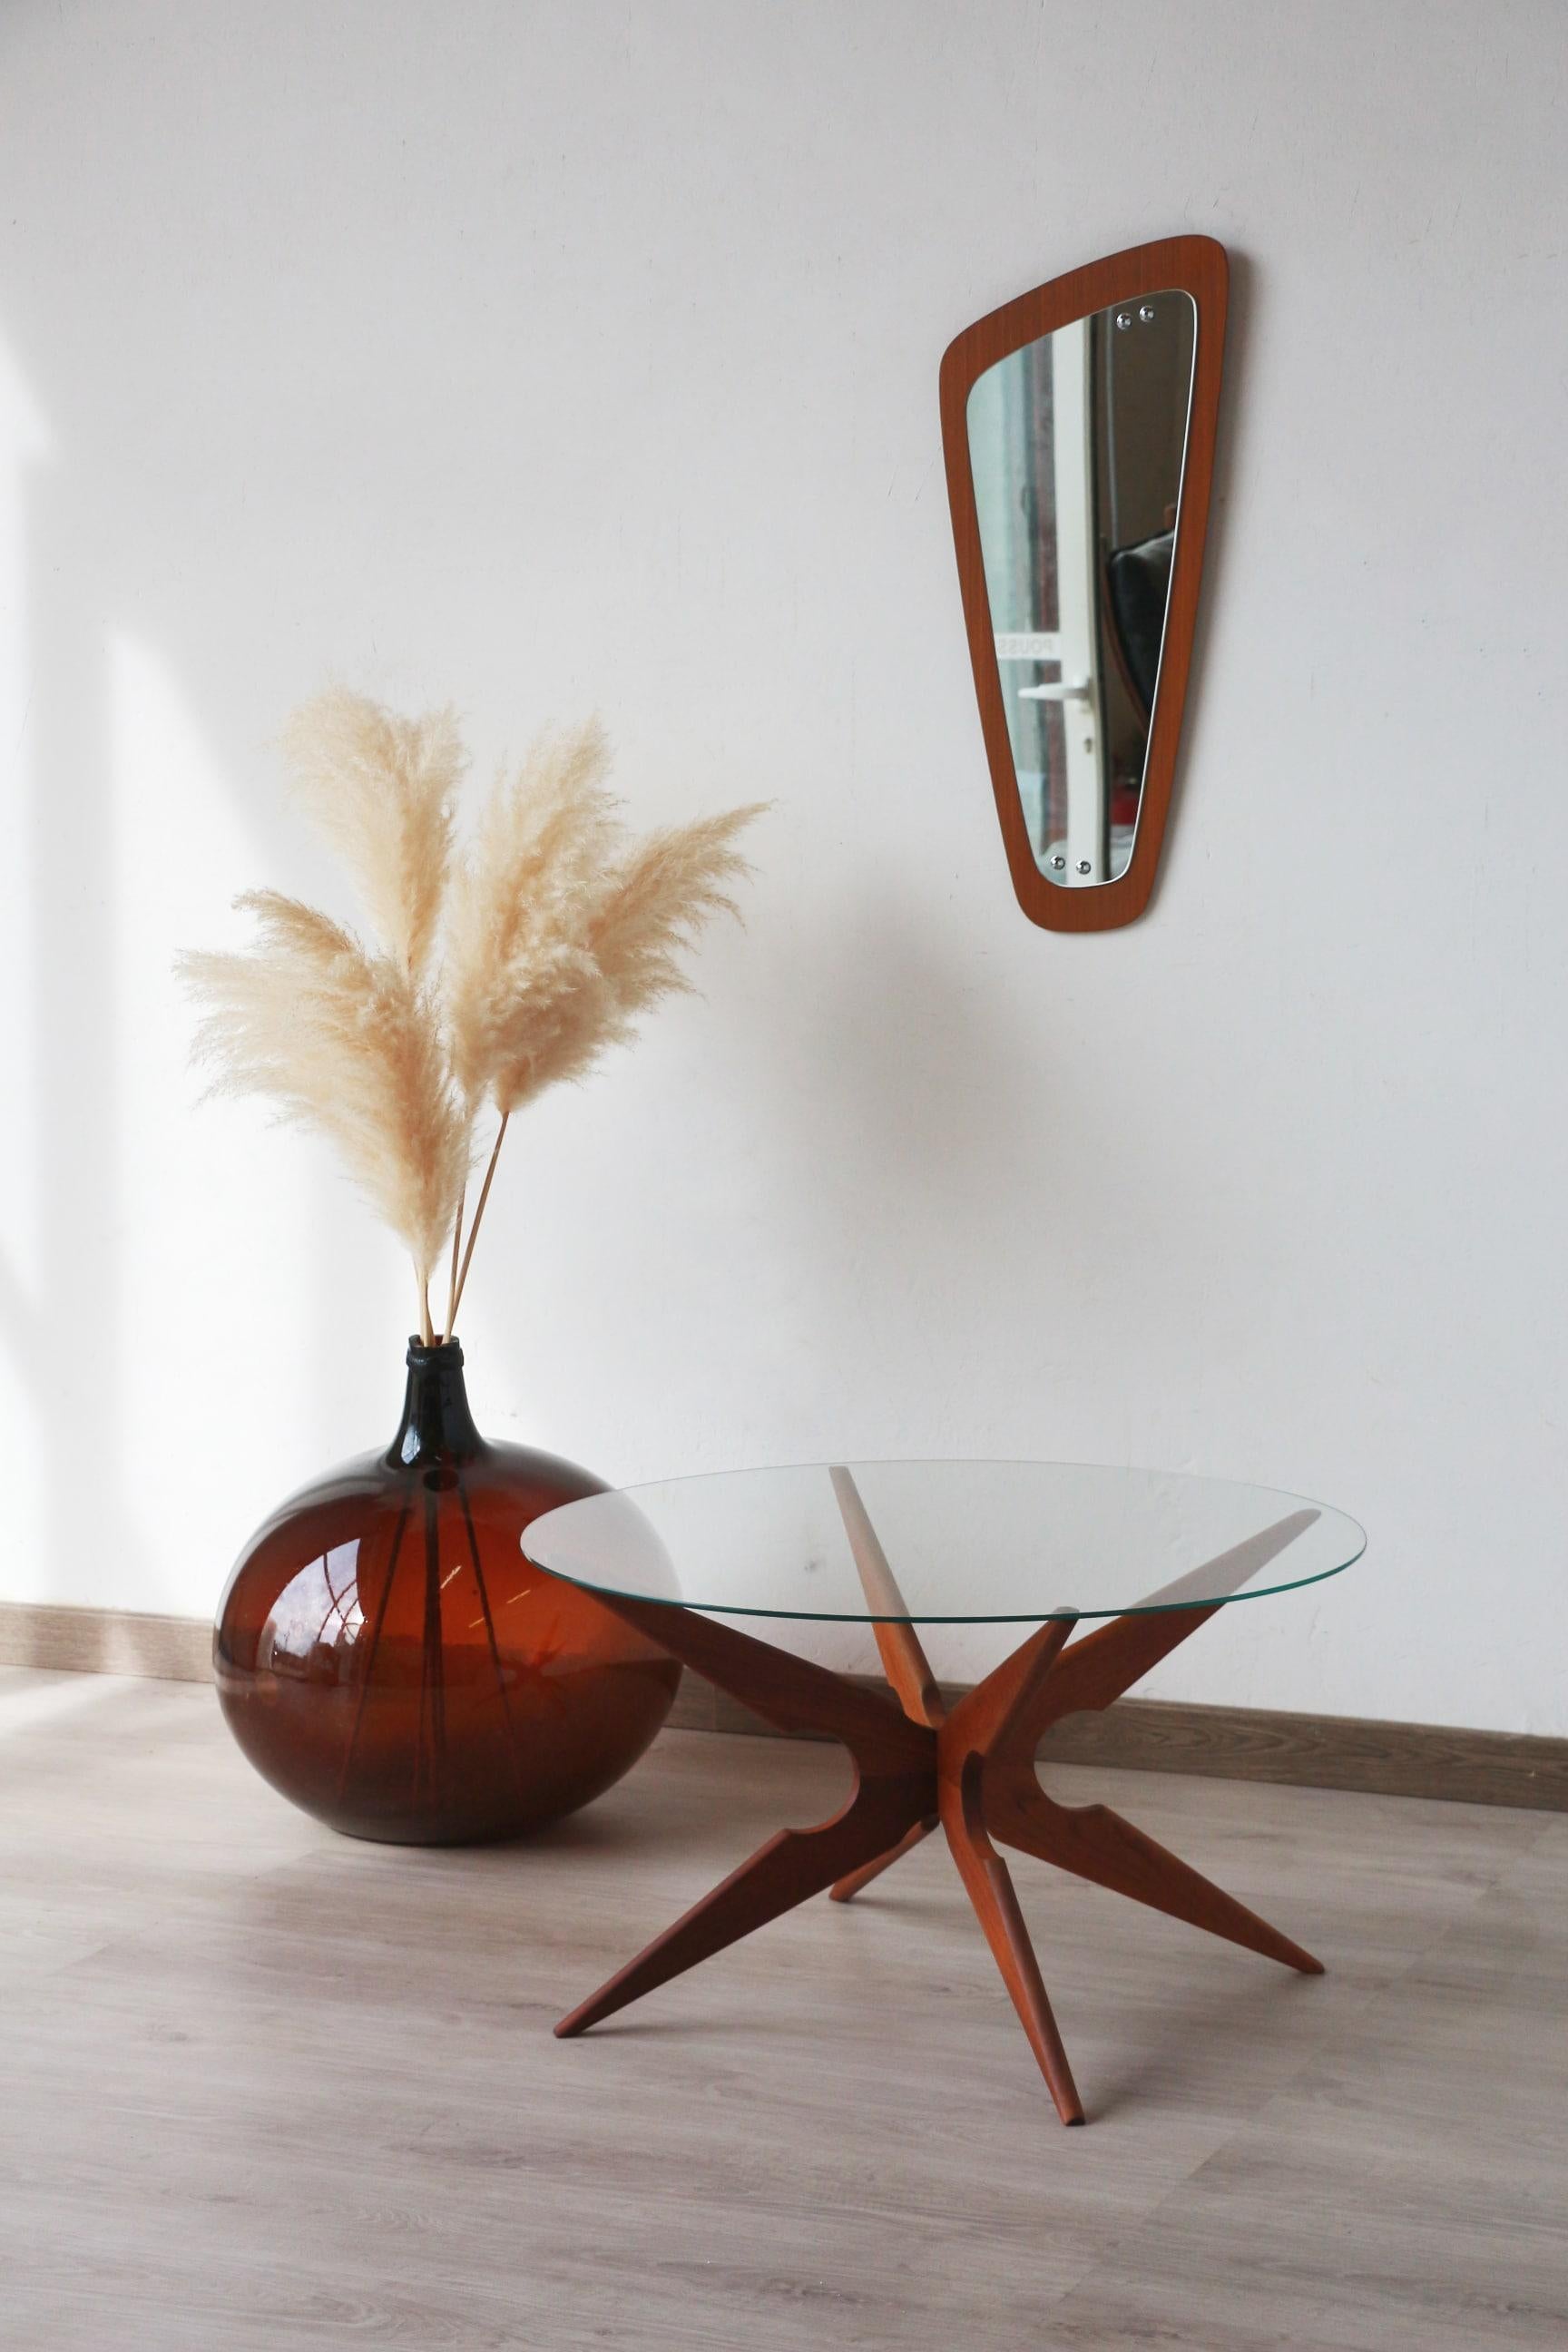 Une table basse connue sous le nom de Spider, fabriquée par le fabricant de meubles danois Sika Møbler dans les années 1960.

La structure en bois est en teck massif.

Les deux sections de la base s'emboîtent l'une dans l'autre et peuvent être